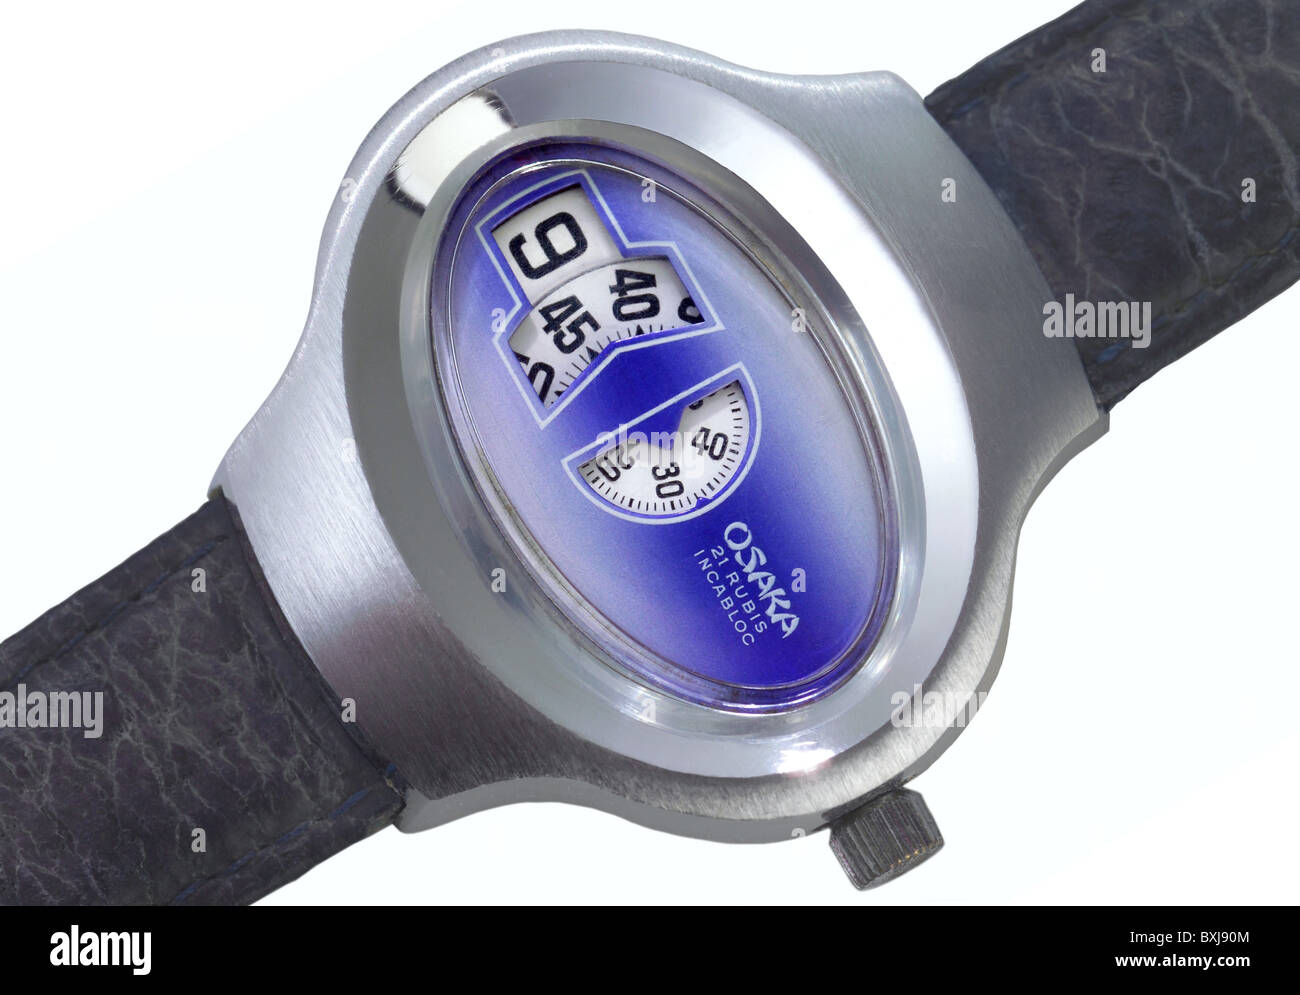 horloge / montre, Osaka design Watch, fabriqué au Japon, vers 1975, droits supplémentaires-Clearences-non disponible Banque D'Images